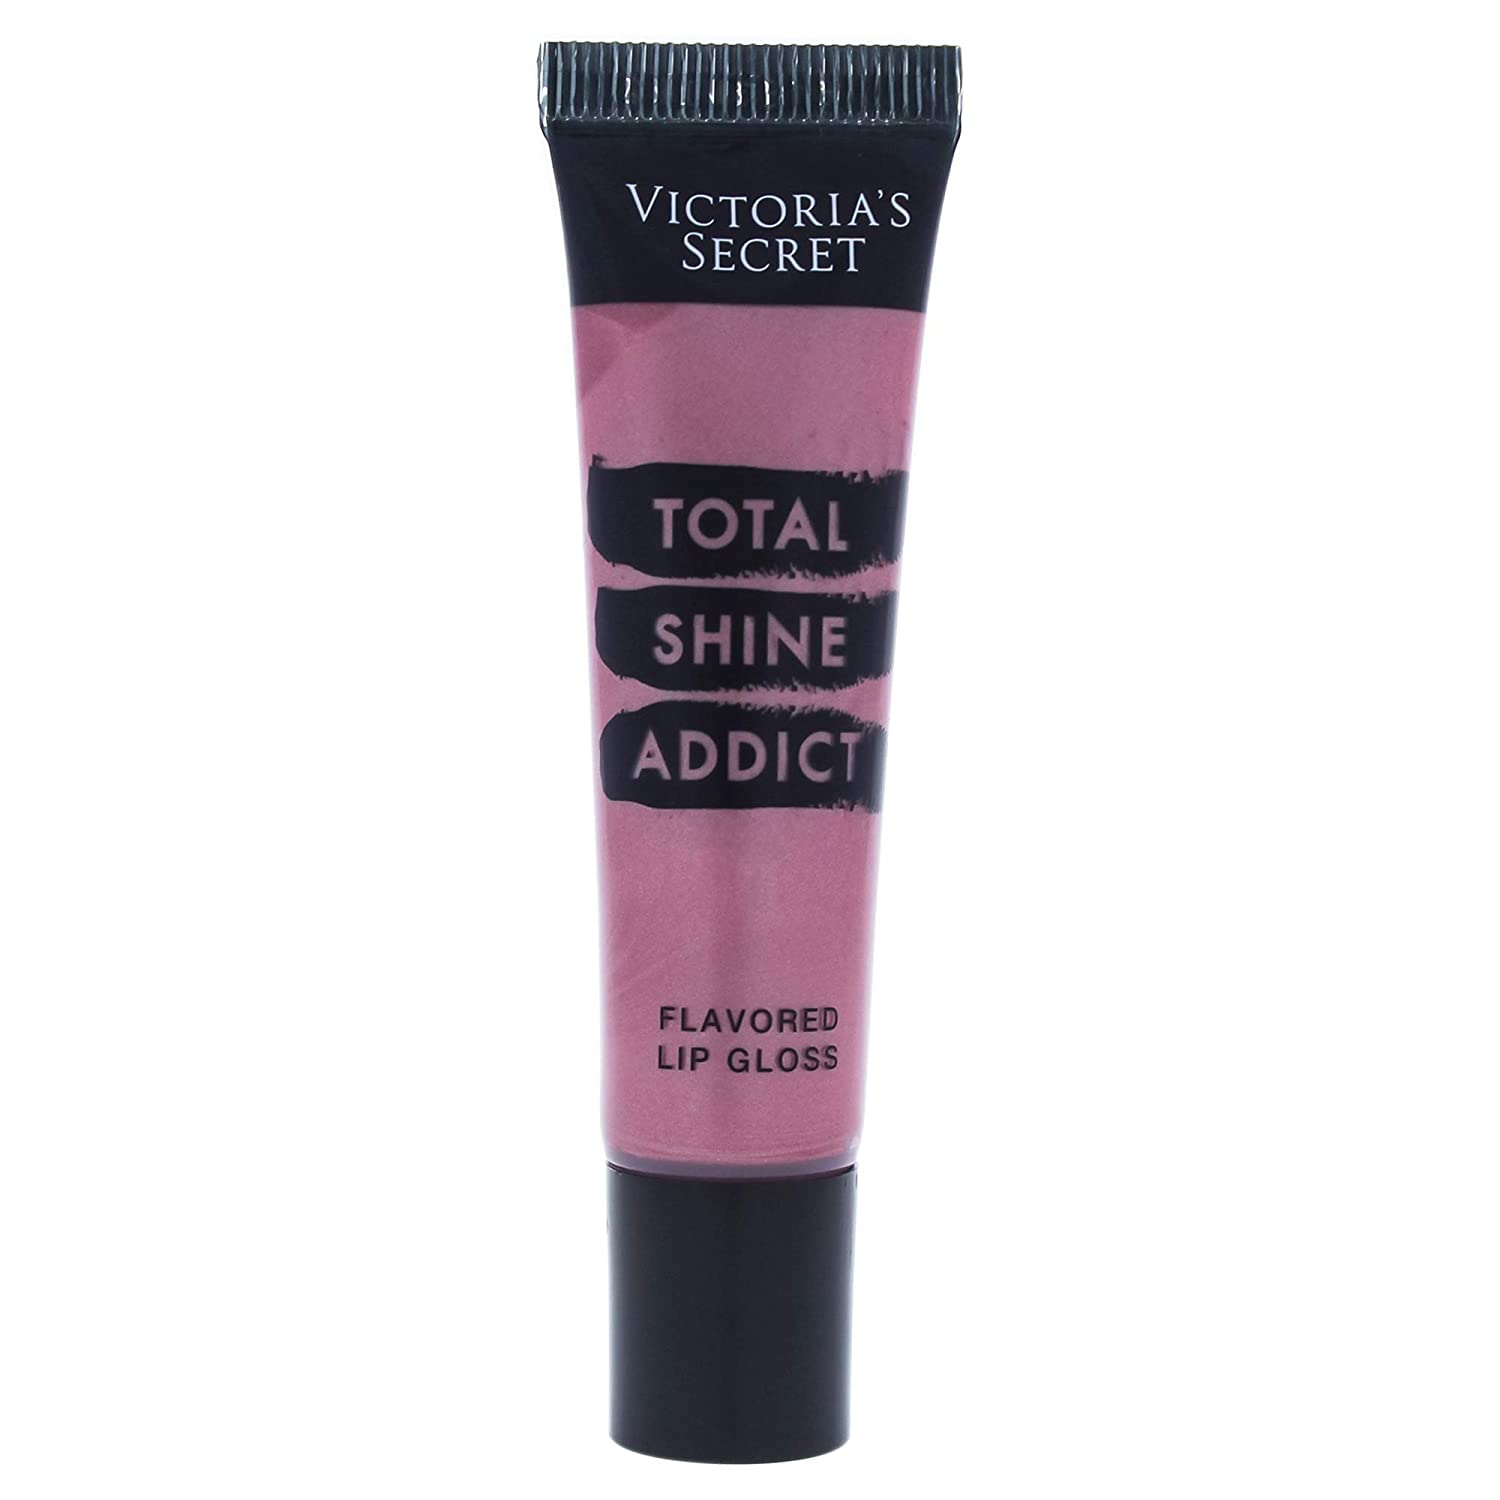 ''Victoria's Secret Total Shine Addict Flavored LIP GLOSS - Berry Flash, 0.46 Oz''